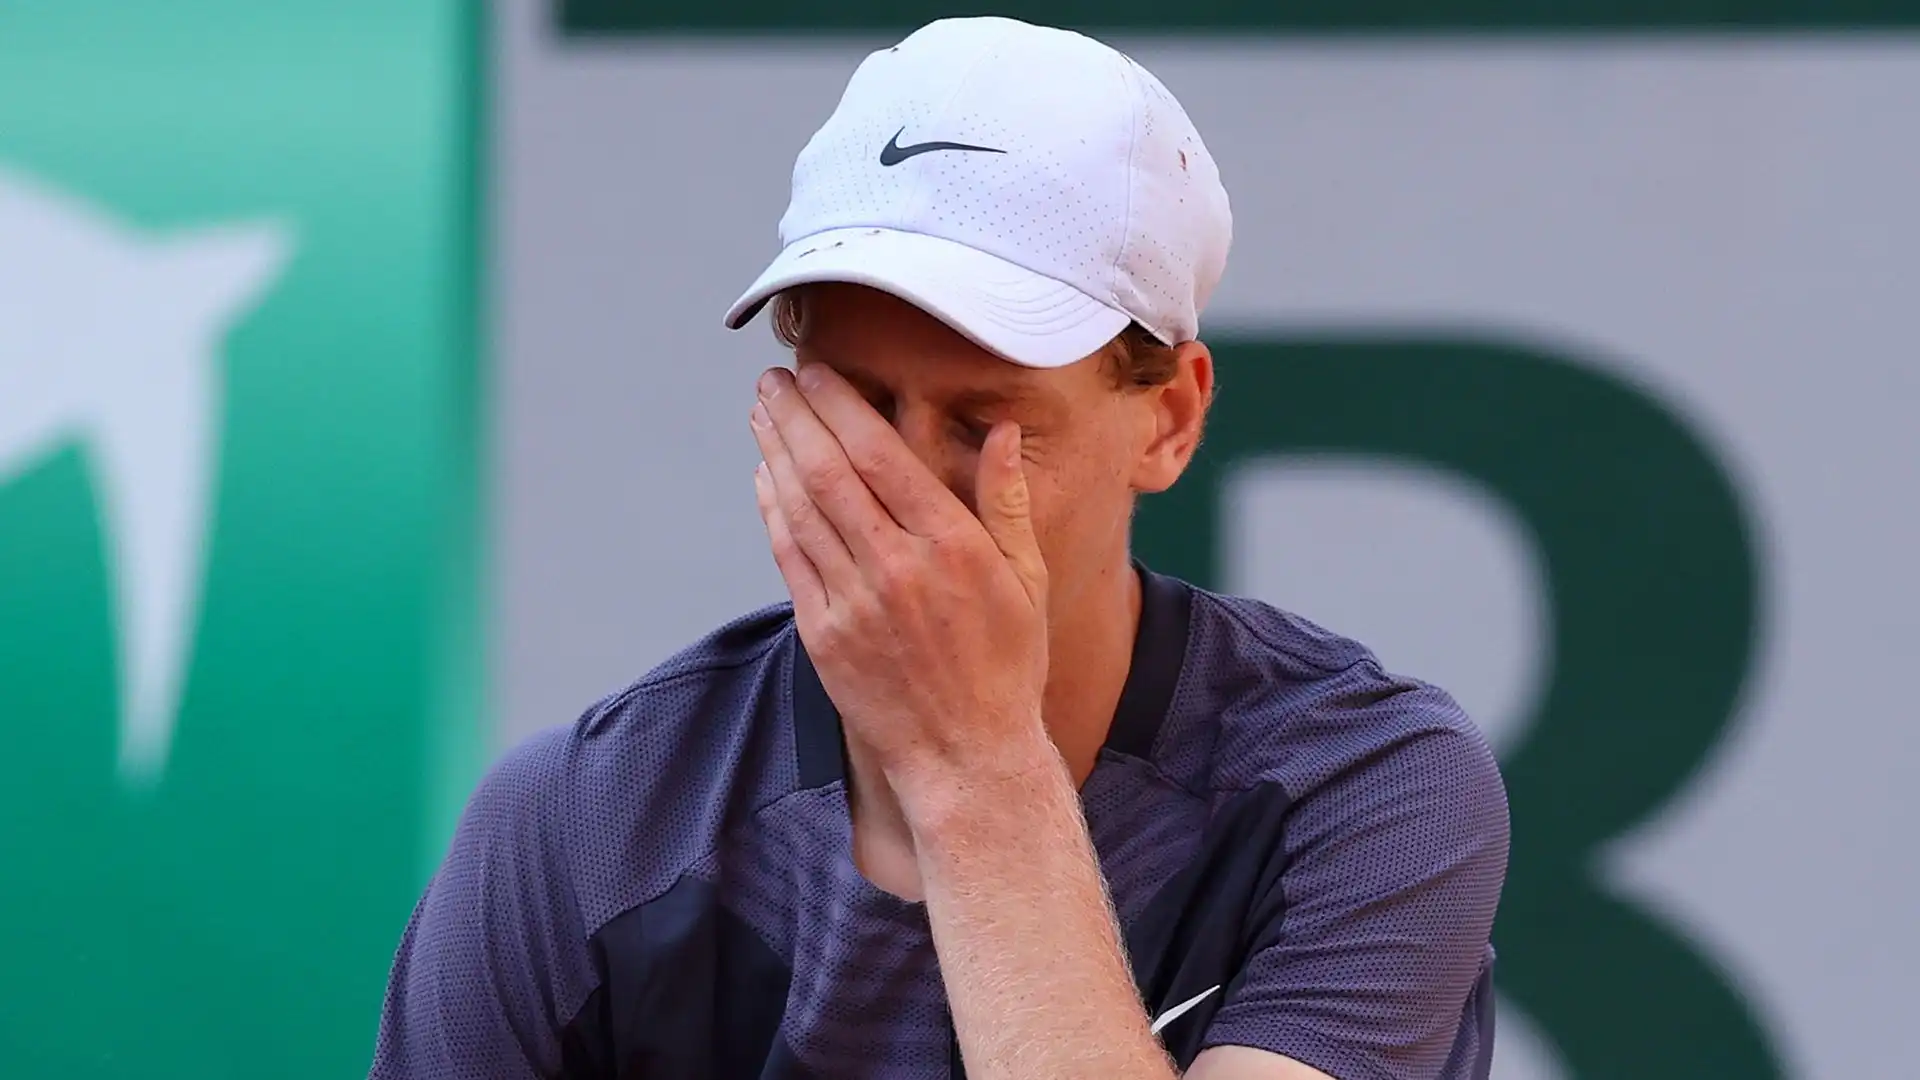 Jannik Sinner è stato sorprendentemente eliminato al secondo turno del Roland Garros